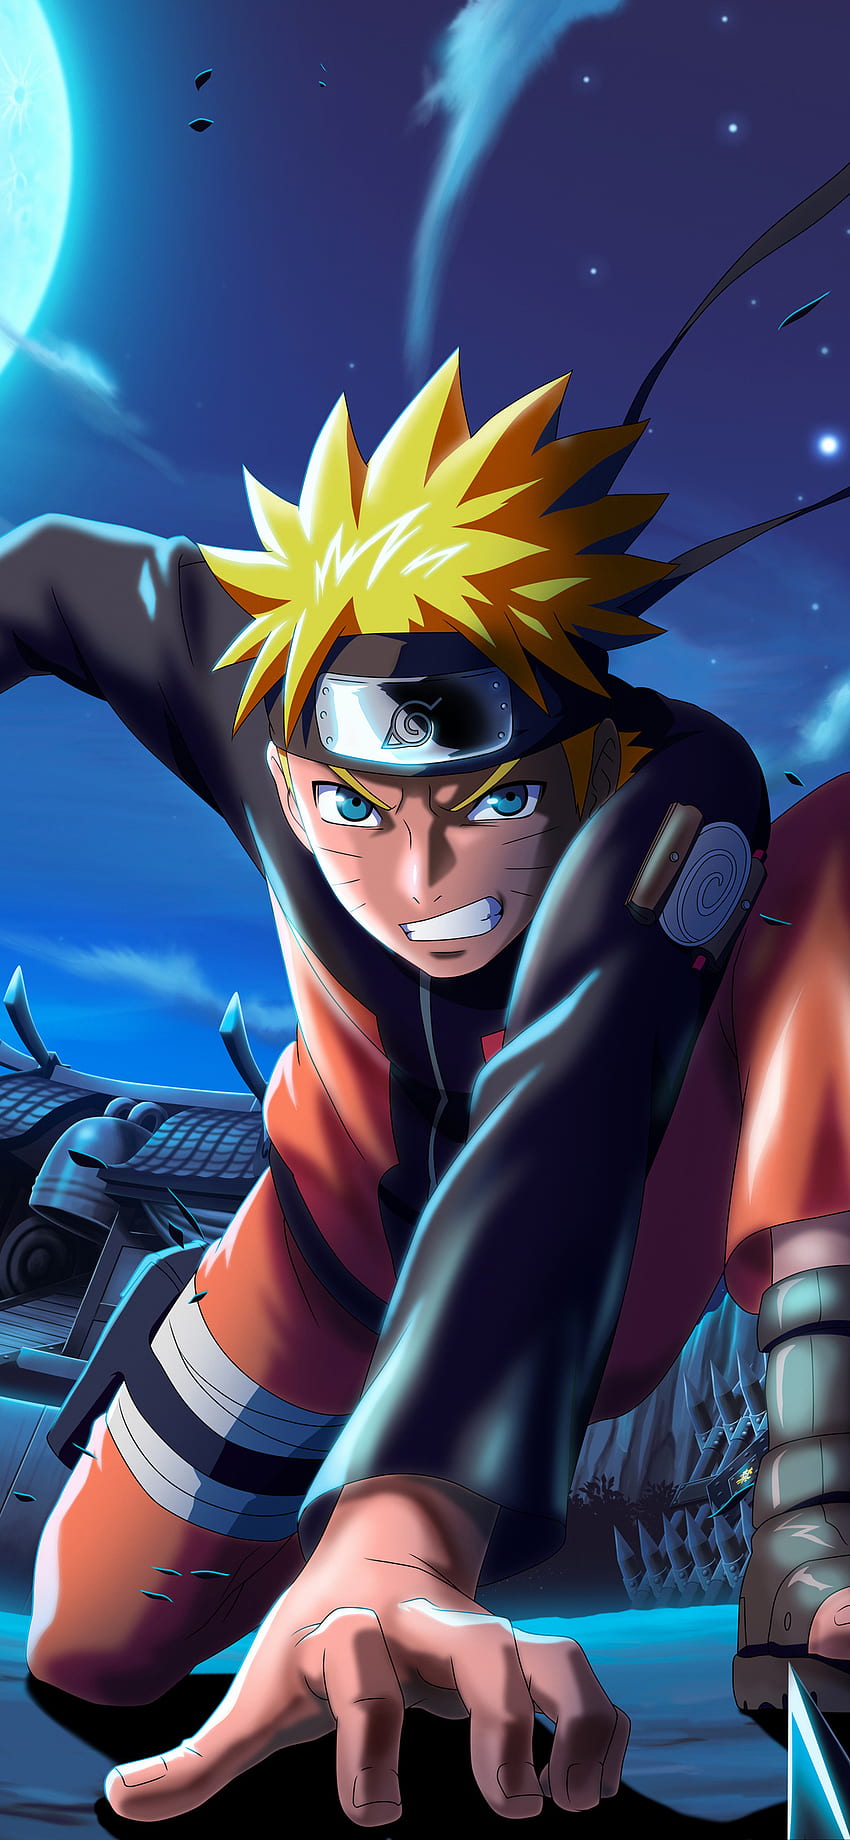 Naruto X Boruto Ninja Voltage: Hãy xem hình ảnh liên quan đến Naruto X Boruto Ninja Voltage để trải nghiệm cảm giác trở thành ninja và điều khiển những siêu anh hùng trong trò chơi hấp dẫn này. Naruto và Boruto sẽ cùng dẫn dắt bạn vào thế giới huyền thoại này.